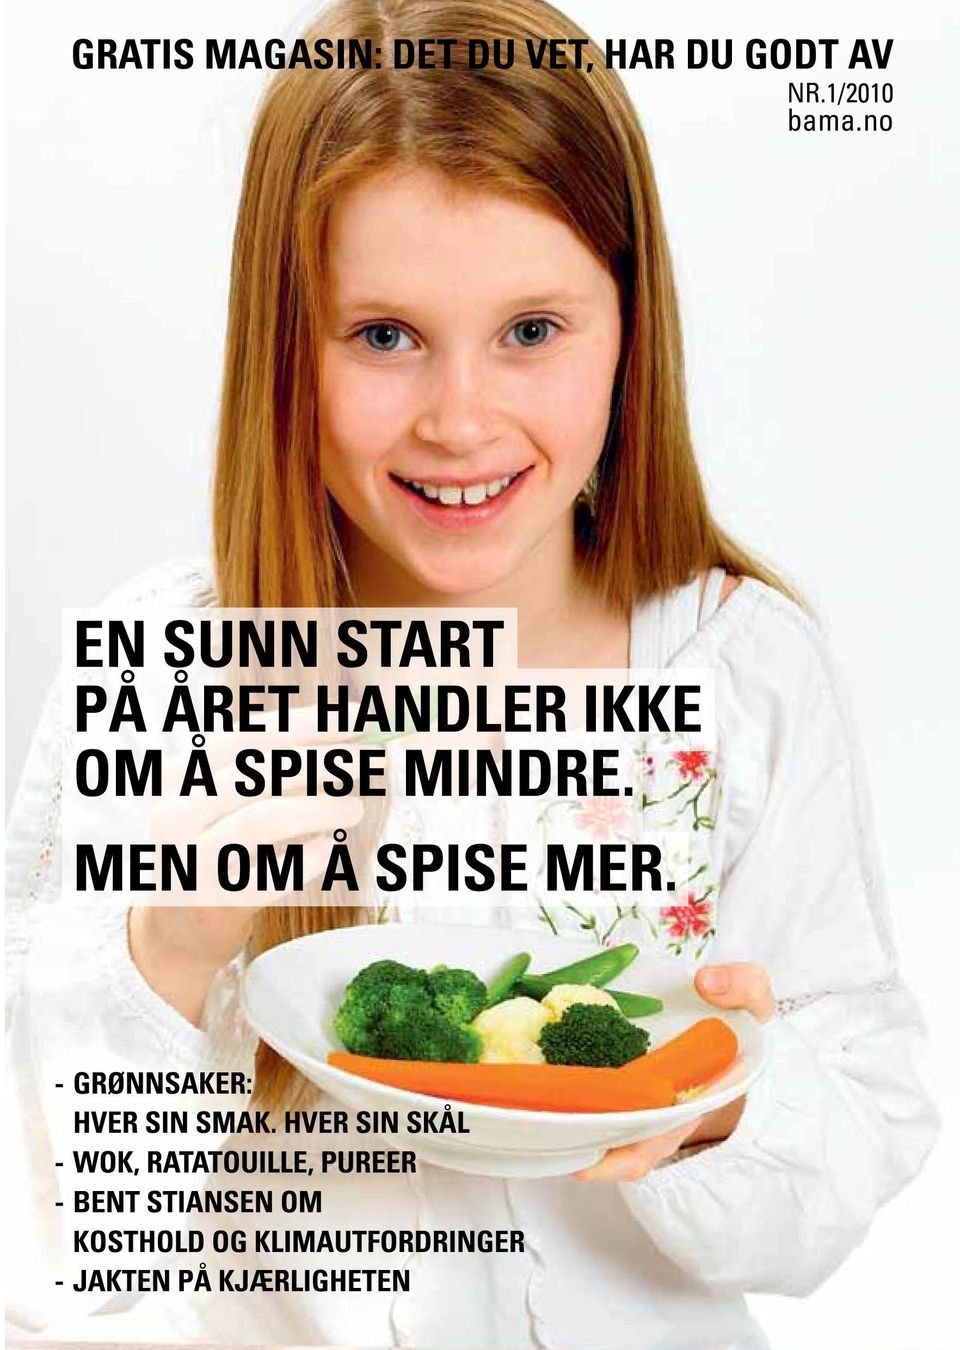 MEN OM Å SPISE MER. - GRØNNSAKER: HVER SIN SMAK.